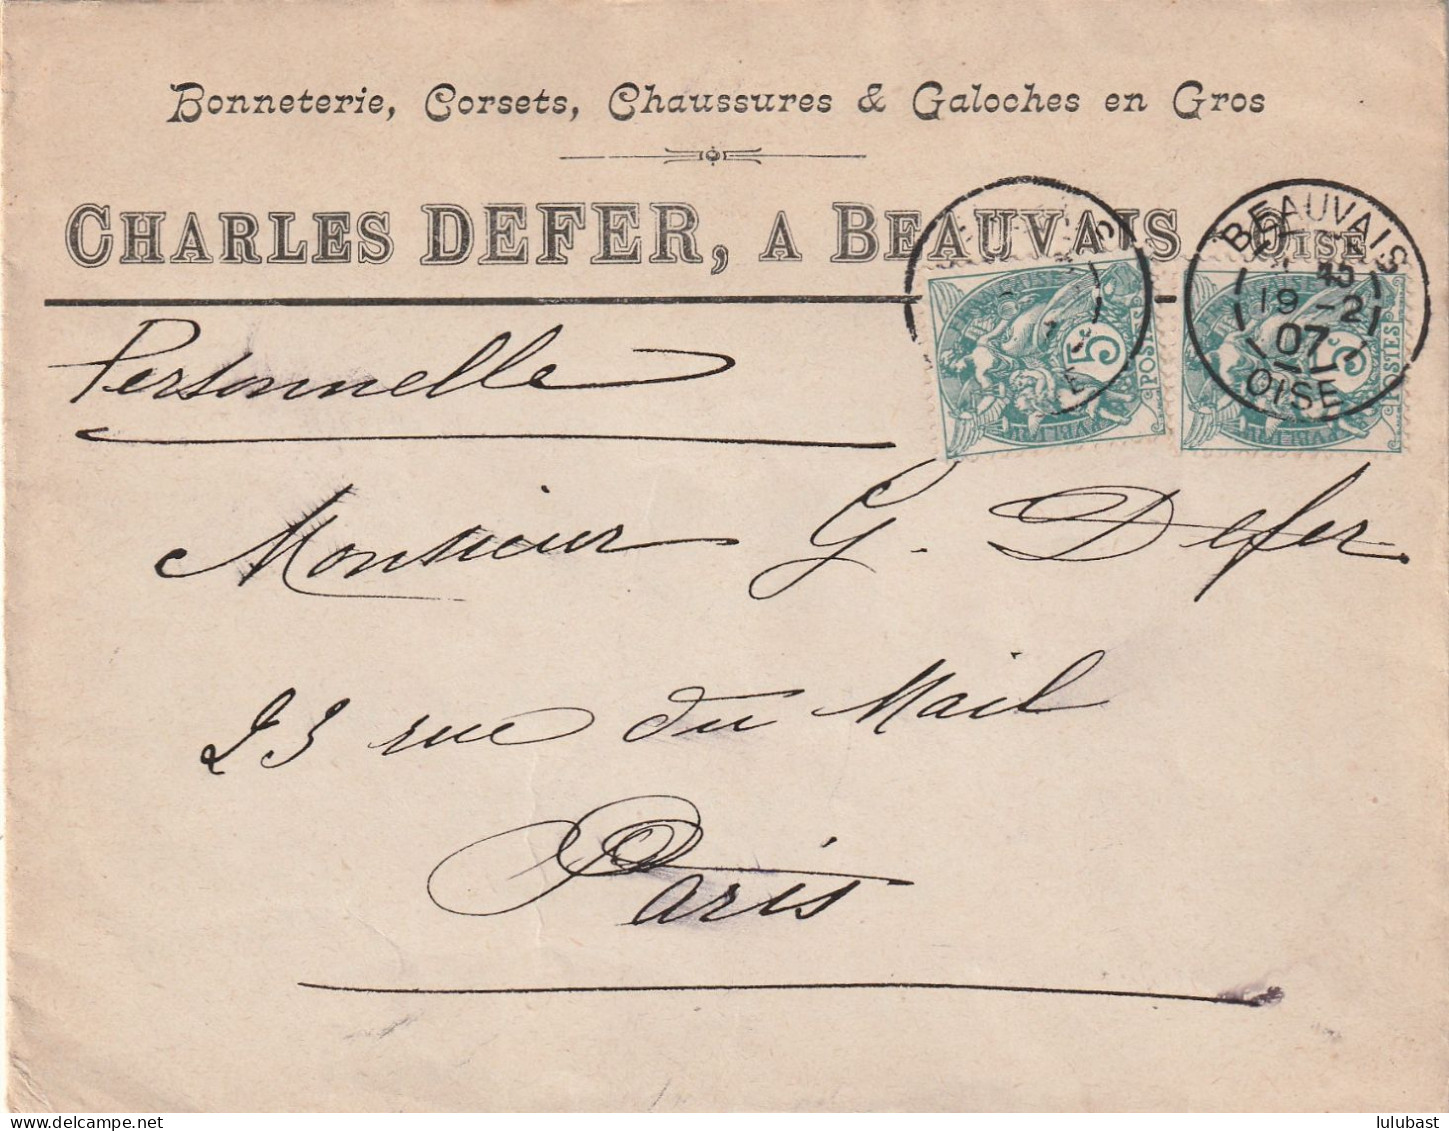 BEAUVAIS ( Oise) : Lettre Commerciale De La Bonneterie, Corsets, Chaussures & Galoches Ch. DEFER. - 1900-29 Blanc